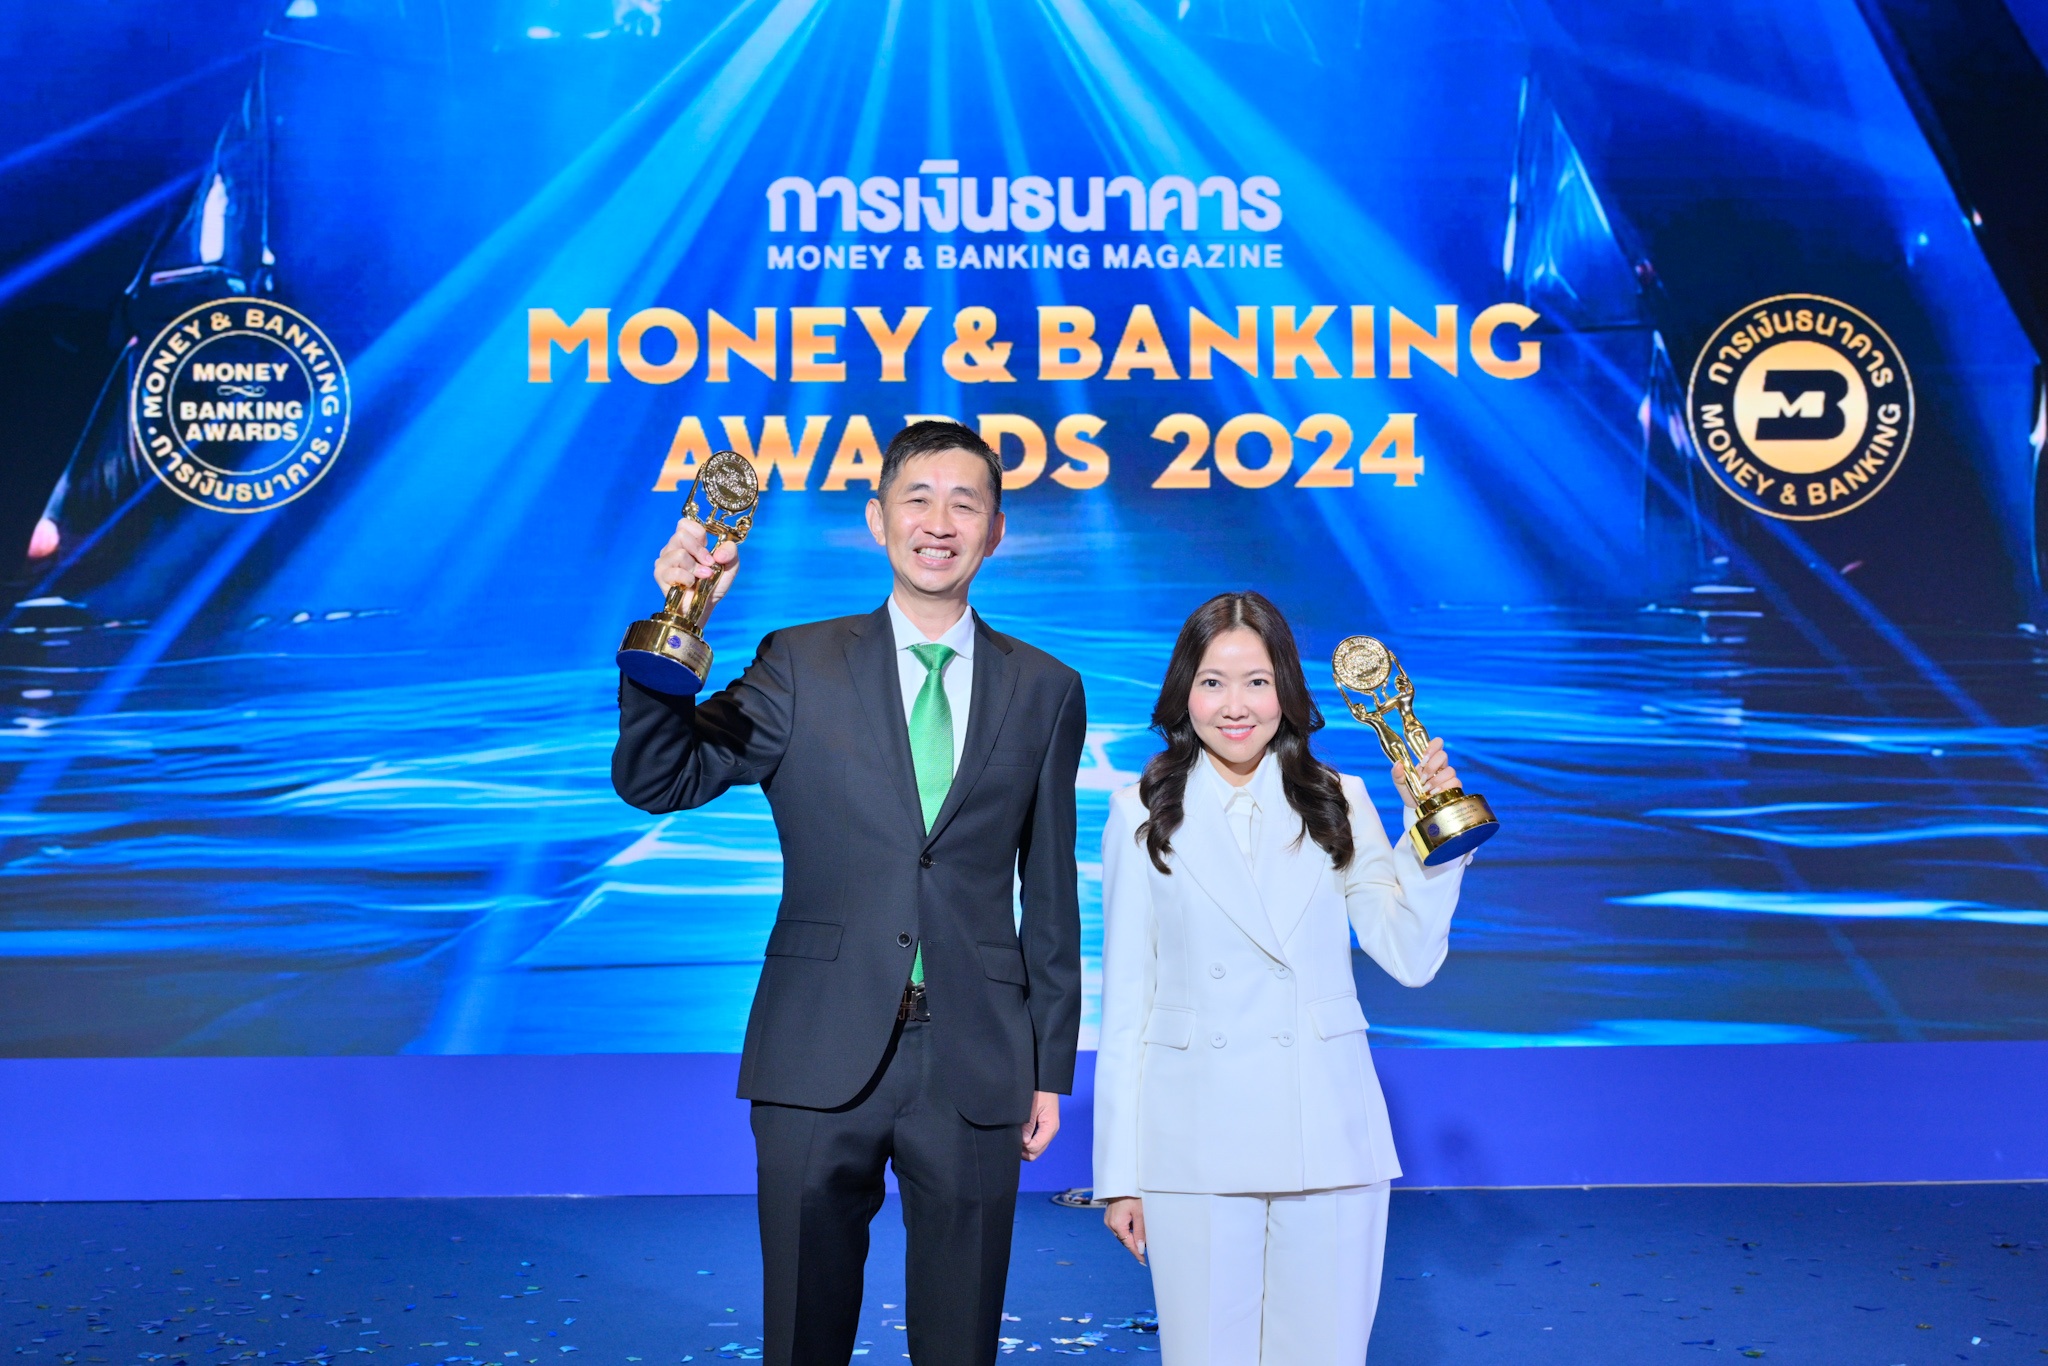 กสิกรไทย คว้า 2 รางวัลเกียรติยศ จากงาน Money & Banking Awards 2024